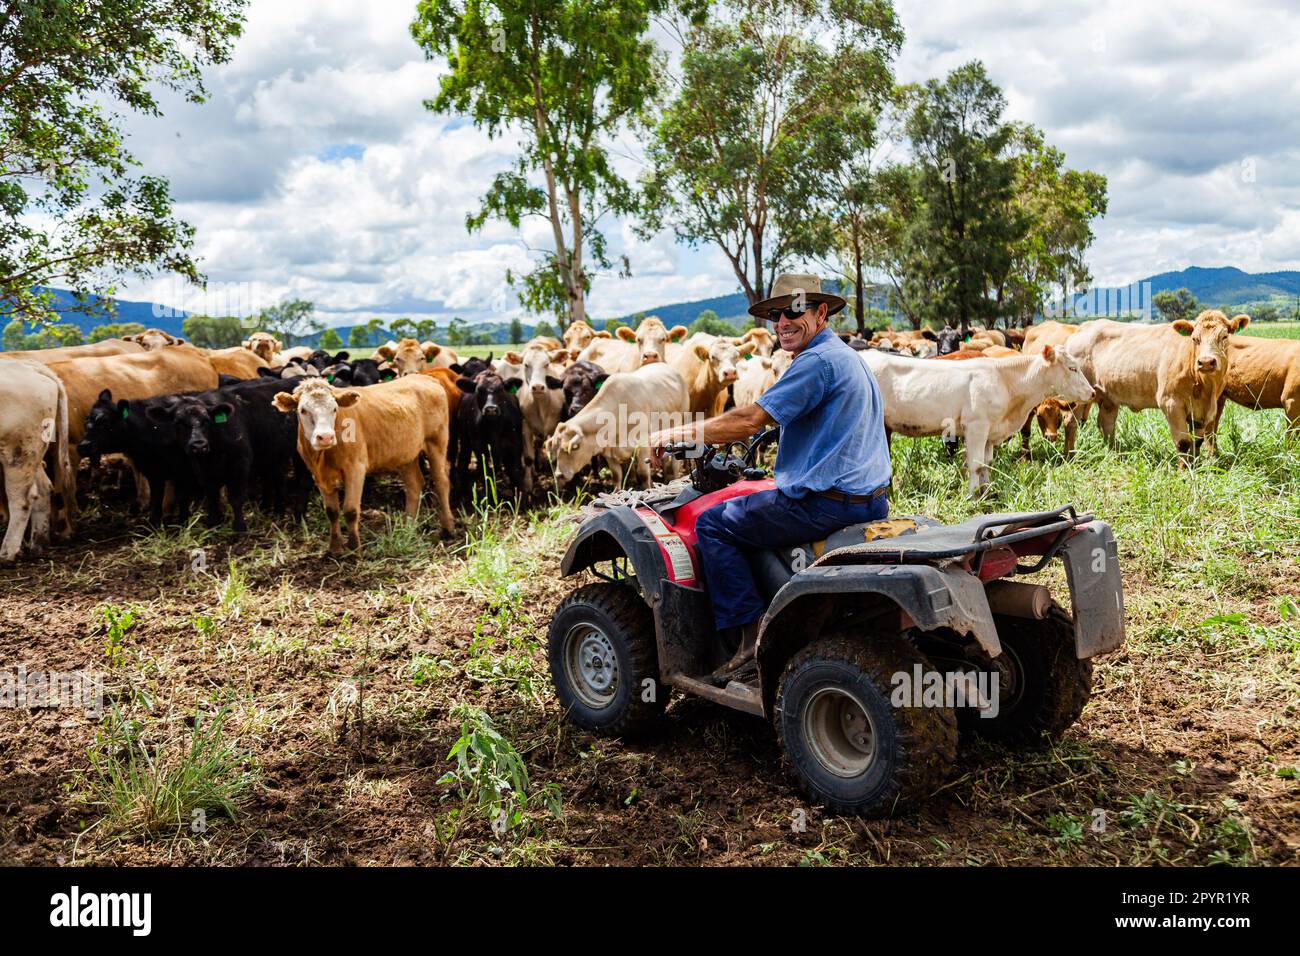 Glücklicher australischer Bauer auf dem Quad, umgeben von einer gemischten Menge Vieh Stockfoto